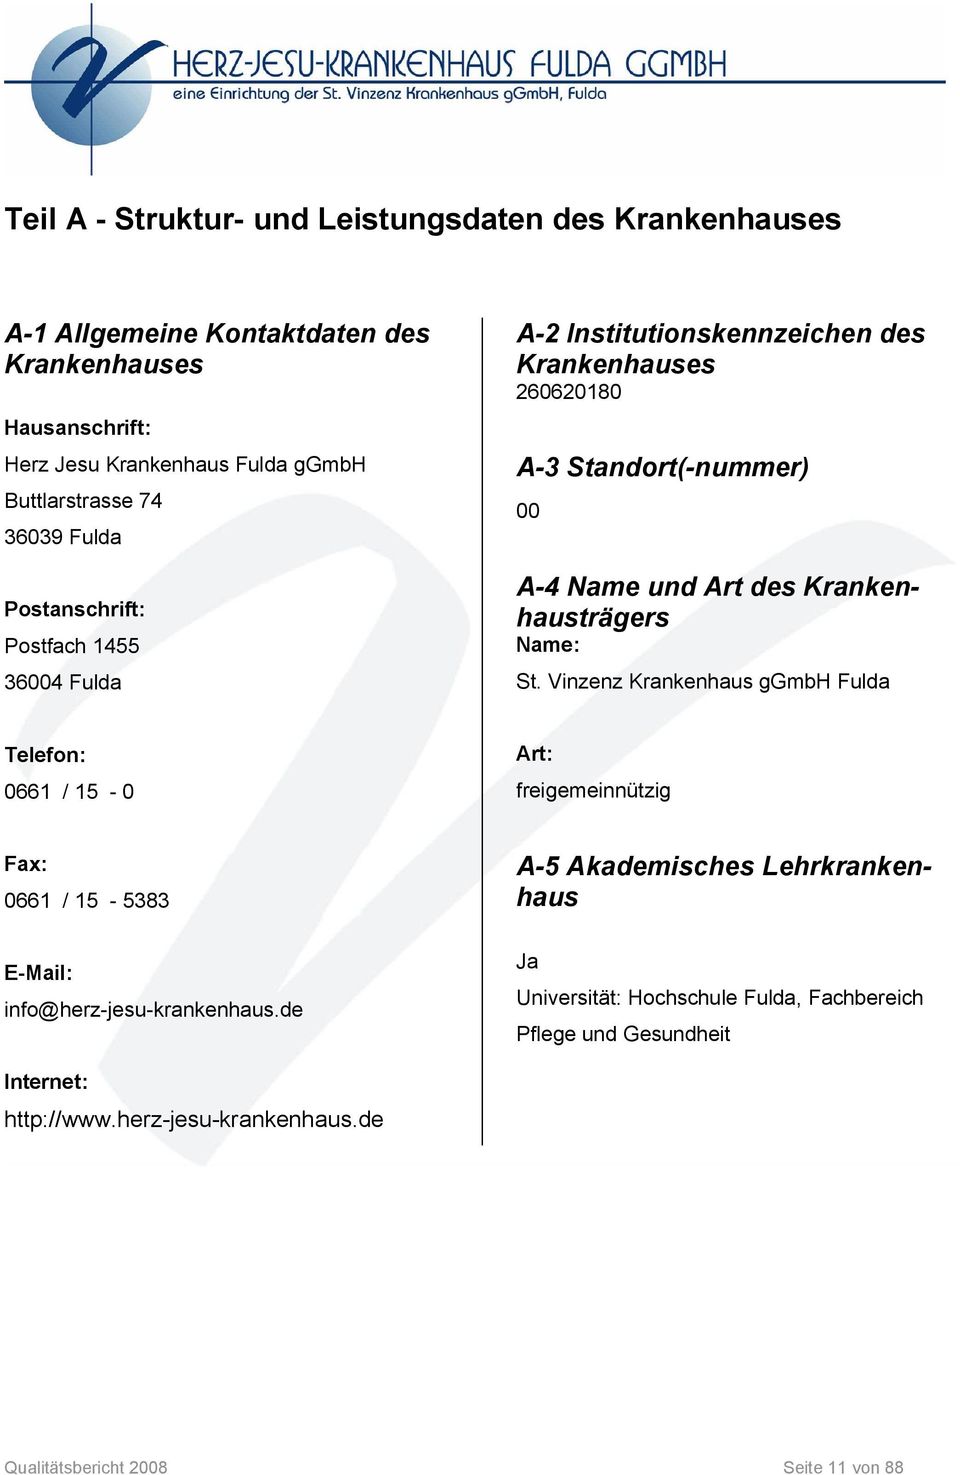 Krankenhausträgers Name: St. Vinzenz Krankenhaus ggmbh Fulda Telefon: 0661 / 15-0 Art: freigemeinnützig Fax: 0661 / 15-5383 E-Mail: info@herz-jesu-krankenhaus.